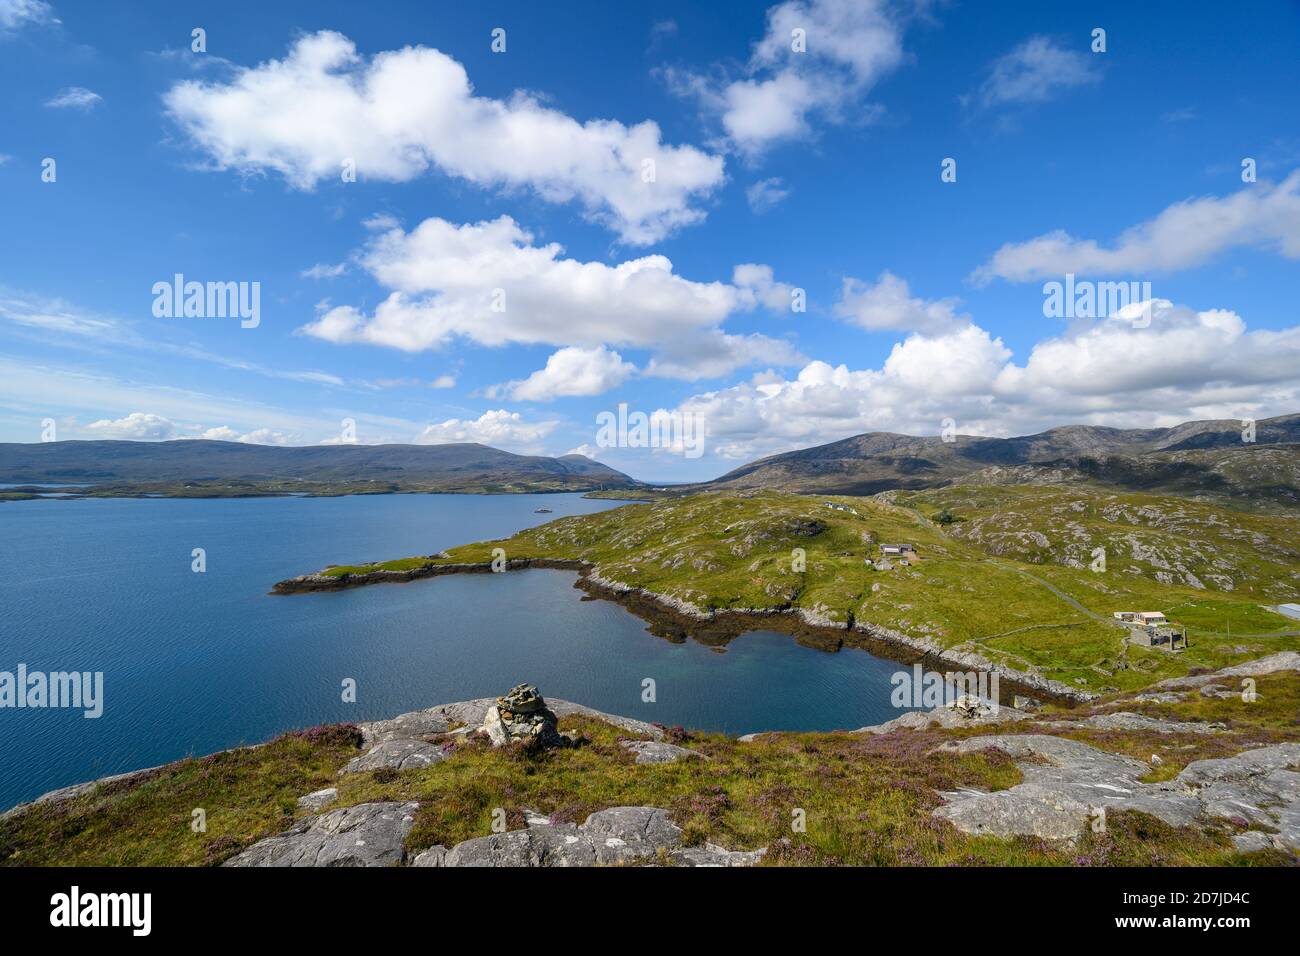 UK, Scotland, Scenic view of Loch Tarbert Stock Photo